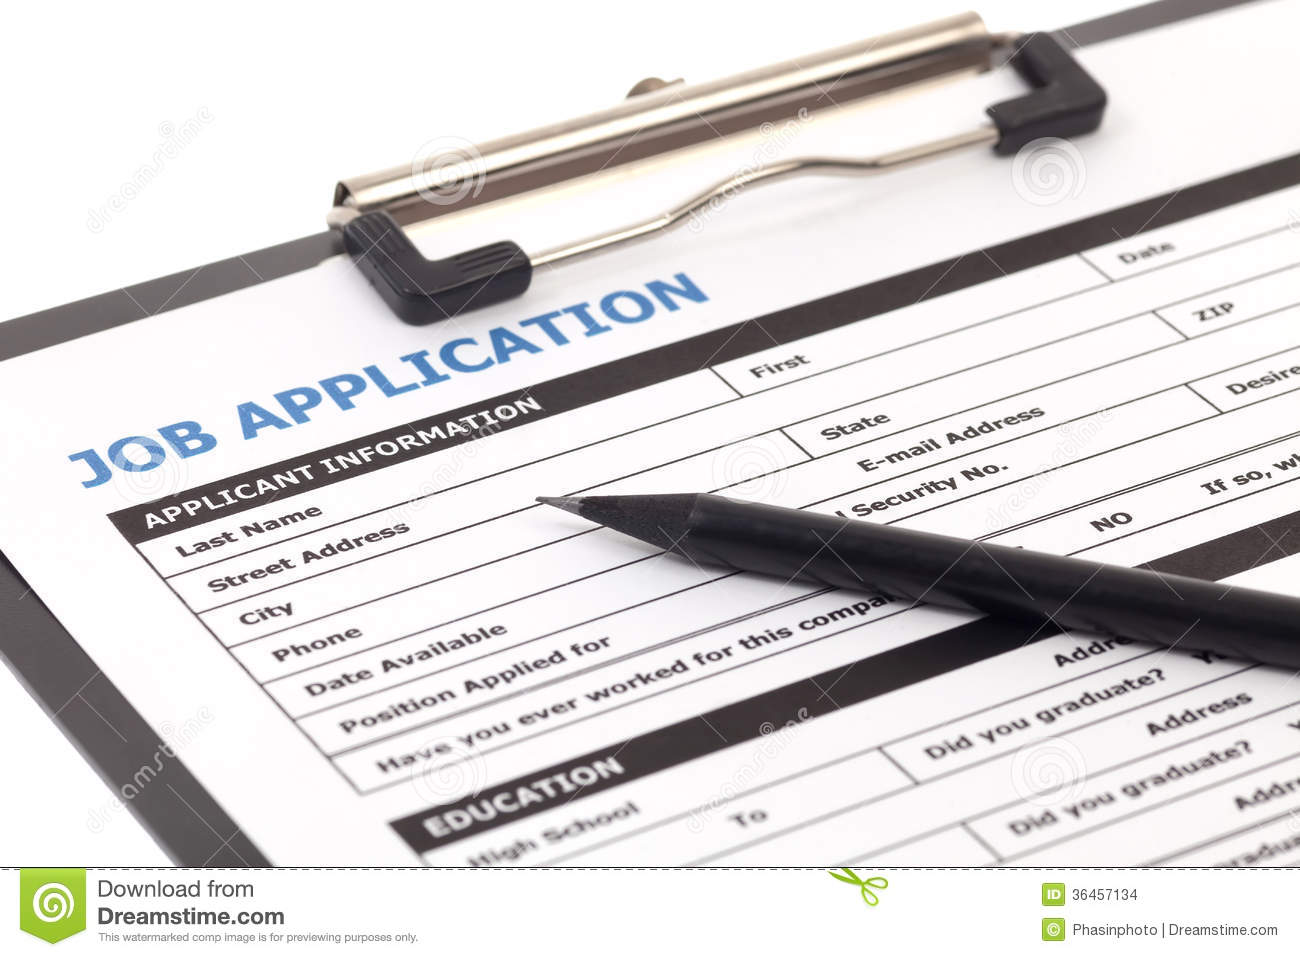 job clipart job applicant